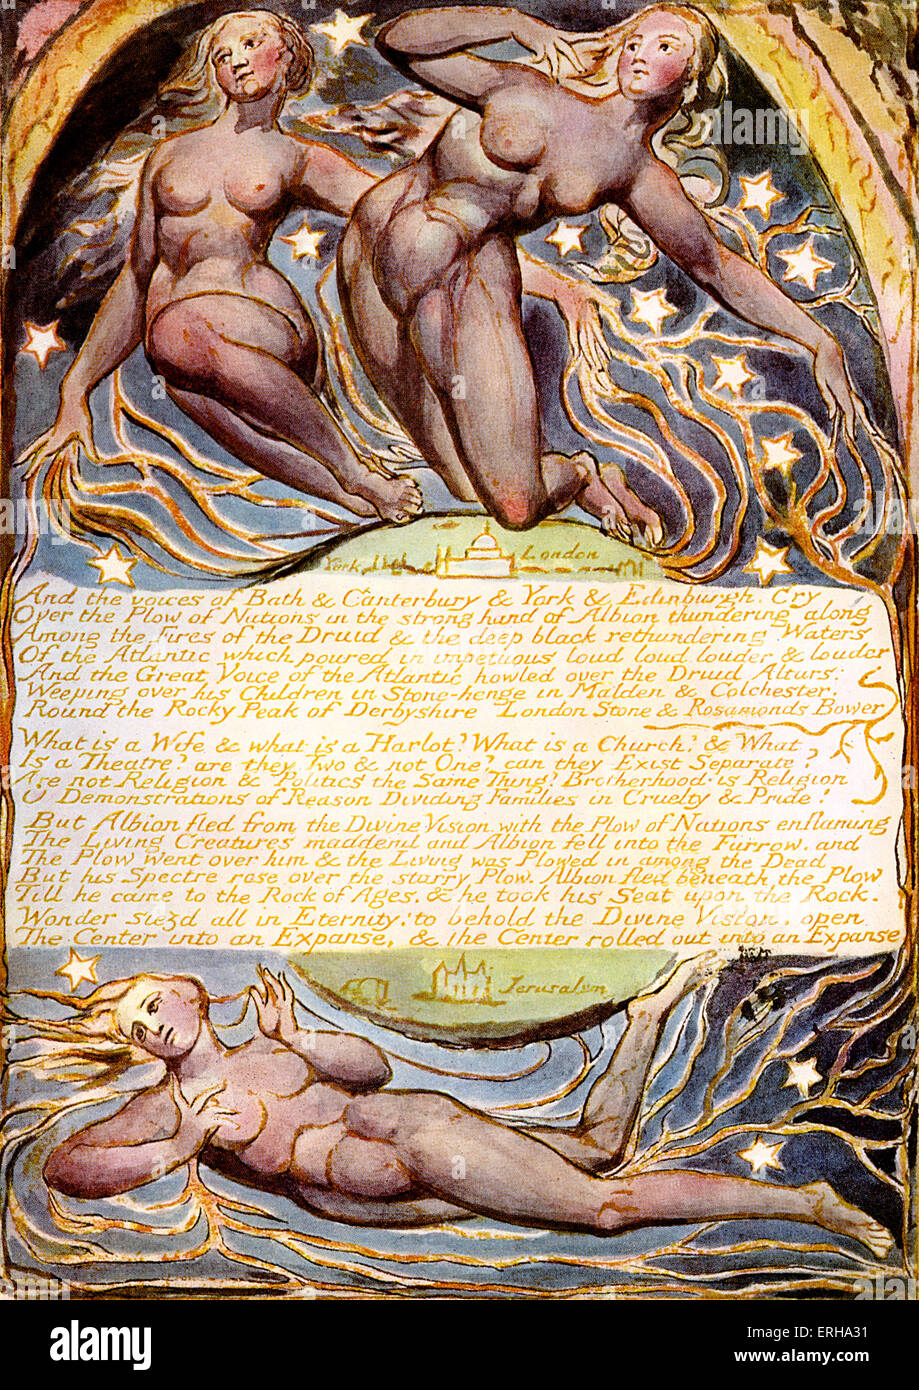 York, a Londra e a Gerusalemme, pagina 57 del poema "Gerusalemme" di William Blake, 1804-1820. Poeta inglese, pittore e incisore: Foto Stock